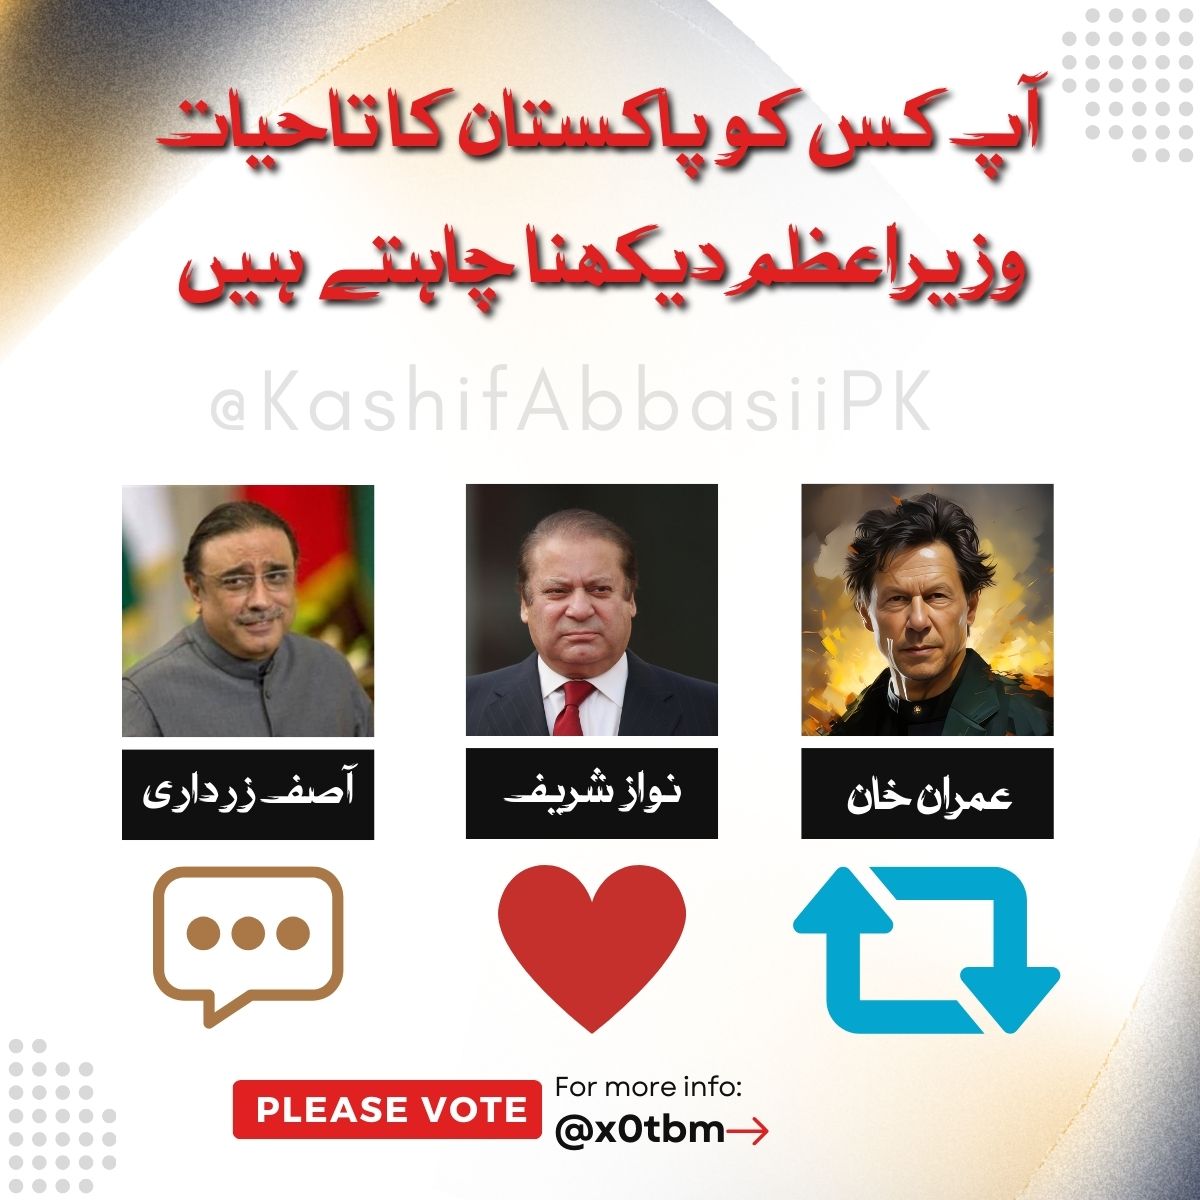 8 فروری/ الیکشن سروے 8 فروری کو آپ کسے ووٹ دے کر وزیراعظم پاکستان منتخب کرنا چاہیں گے ؟ #فروری8_بلے_پہ_ٹھپہ